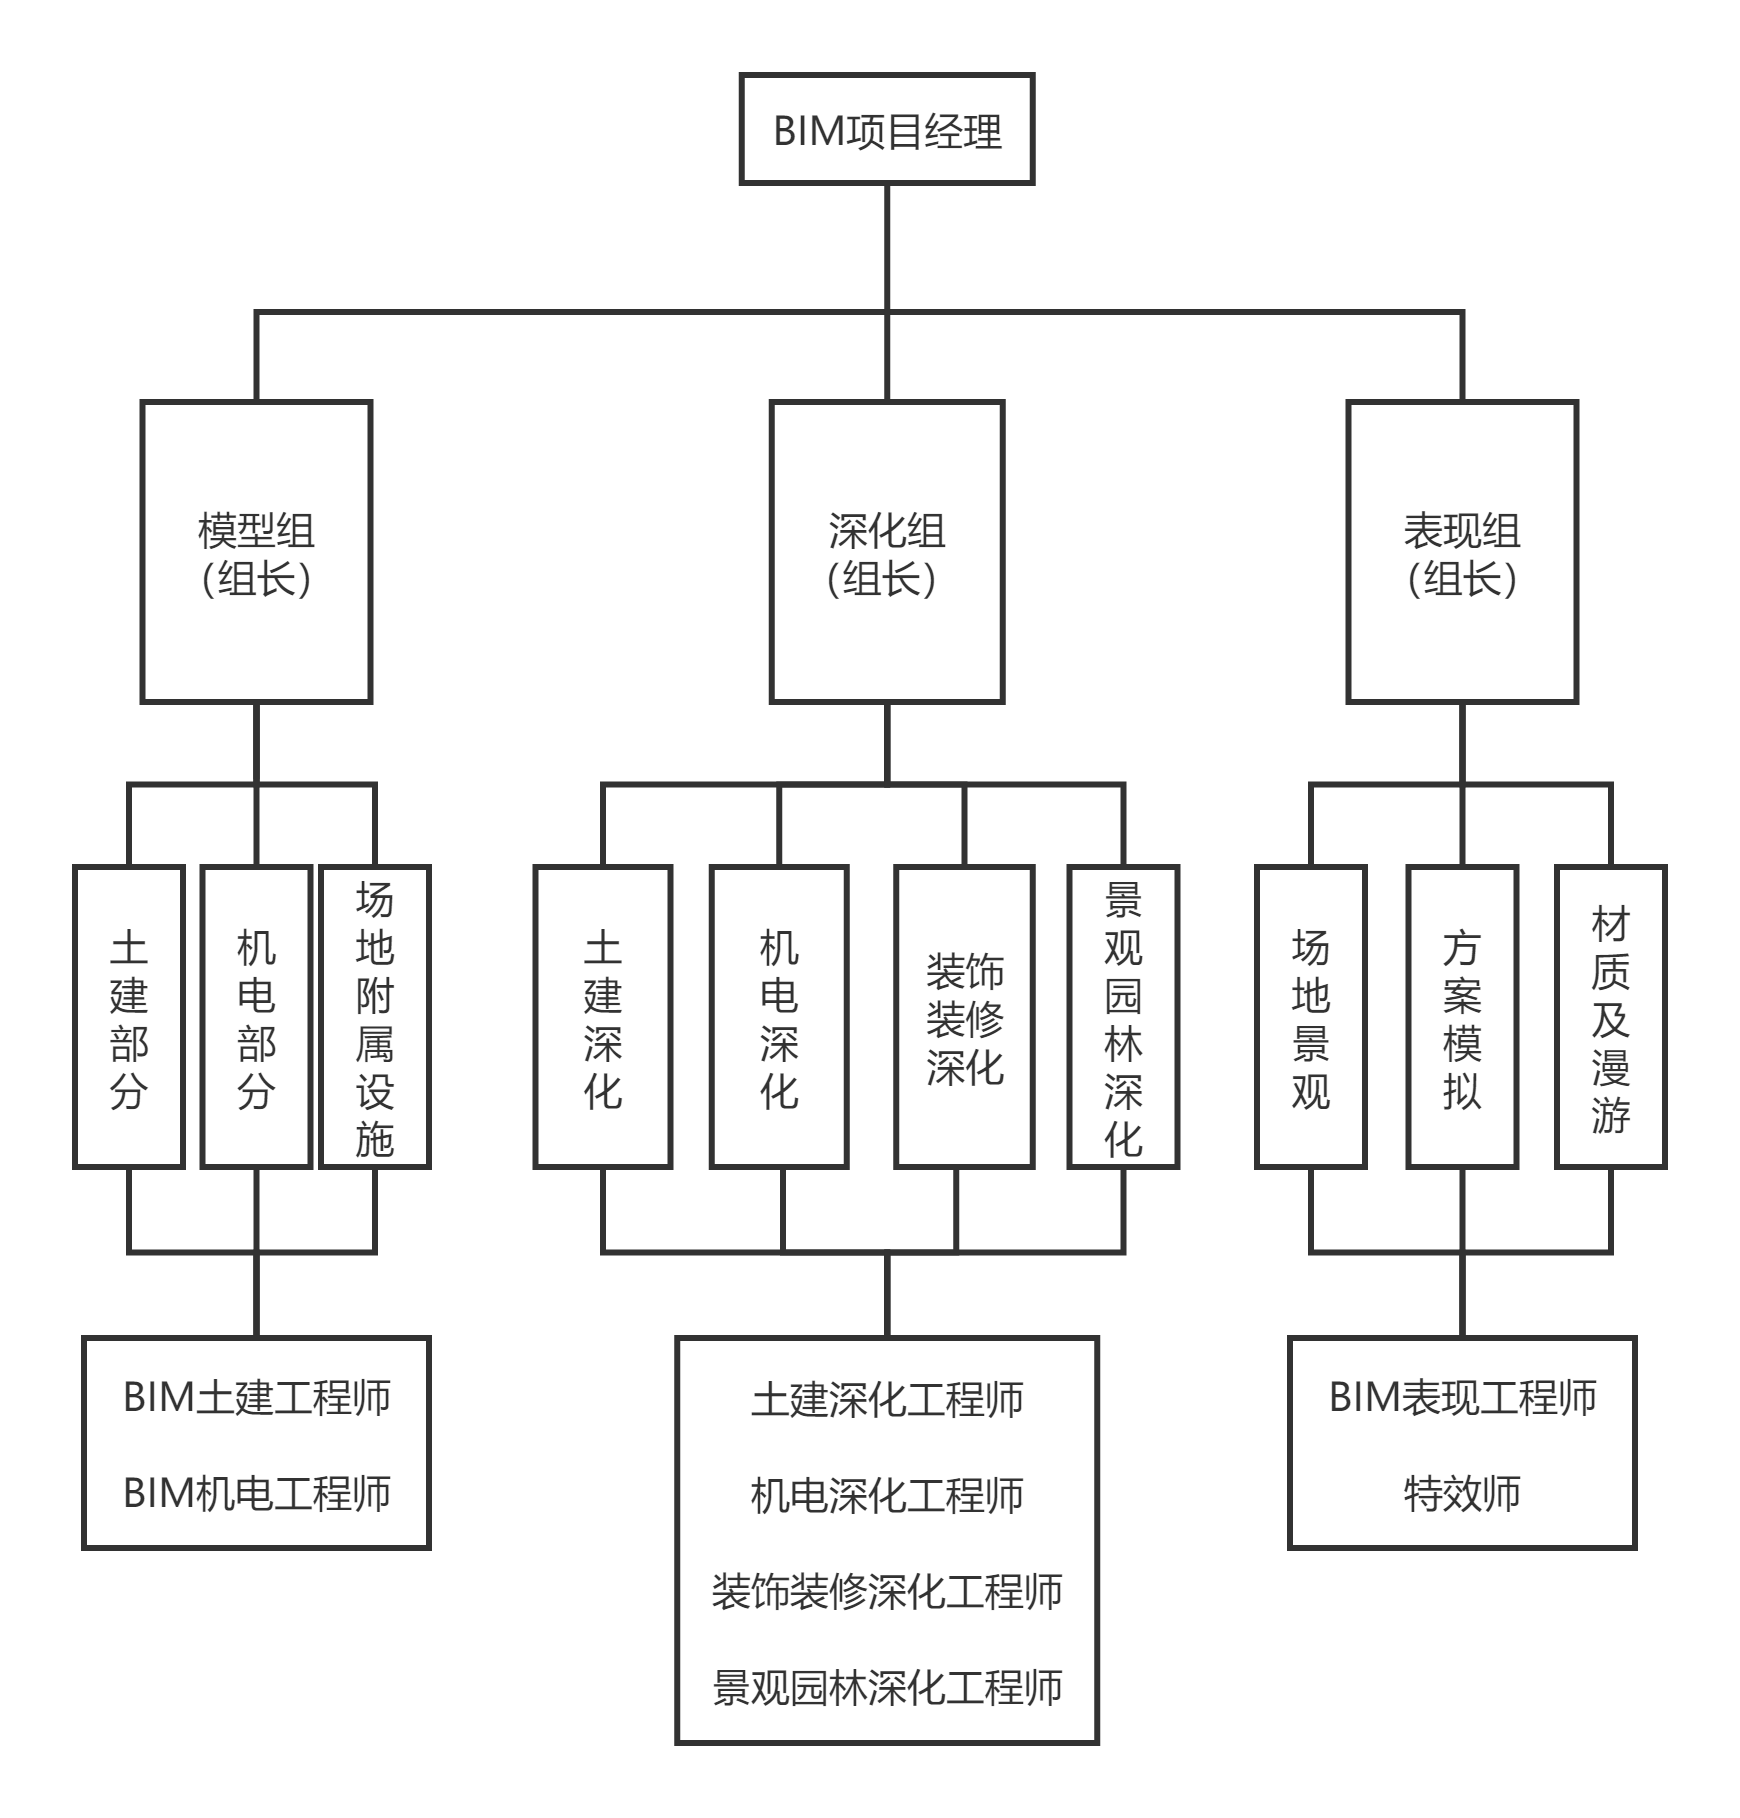 组织架构图(1)-简体.png